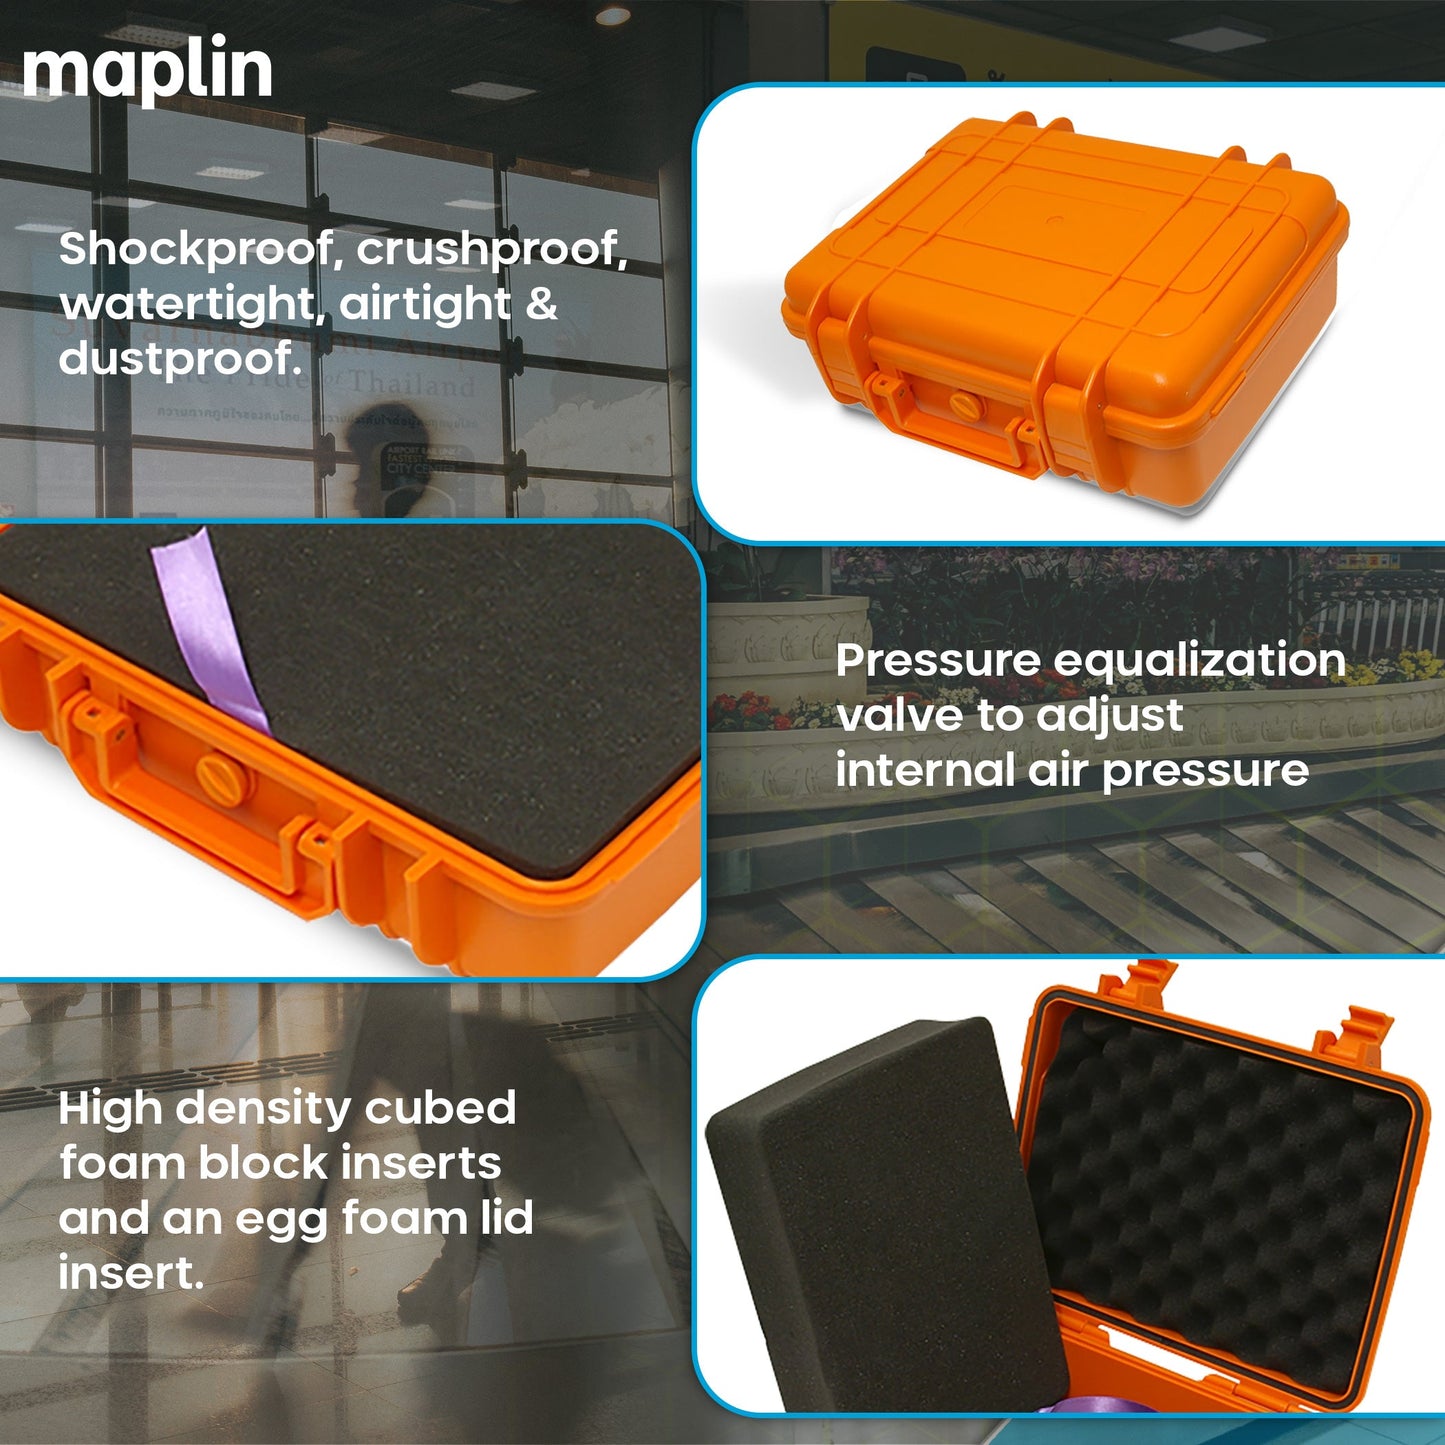 Maplin Plus Shockproof & Waterproof 95.4 x 275 x 203mm Flight Case - Orange - maplin.co.uk